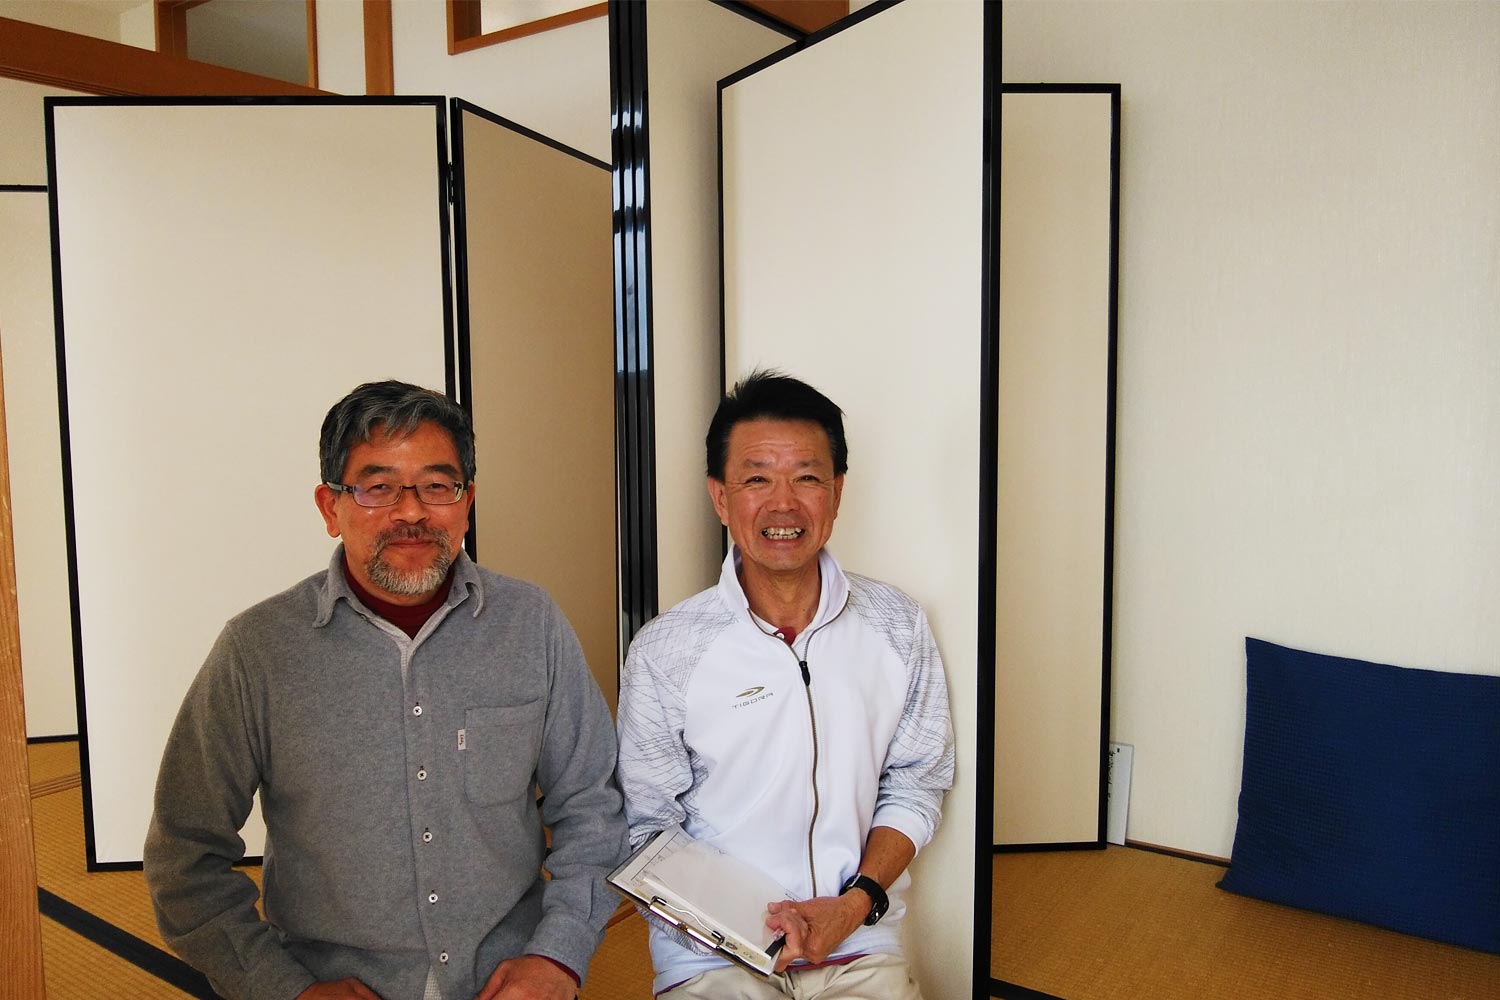 院長の永田 文隆先生（左）と、内観療法担当の高橋先生（右）。長島所長が撮影。